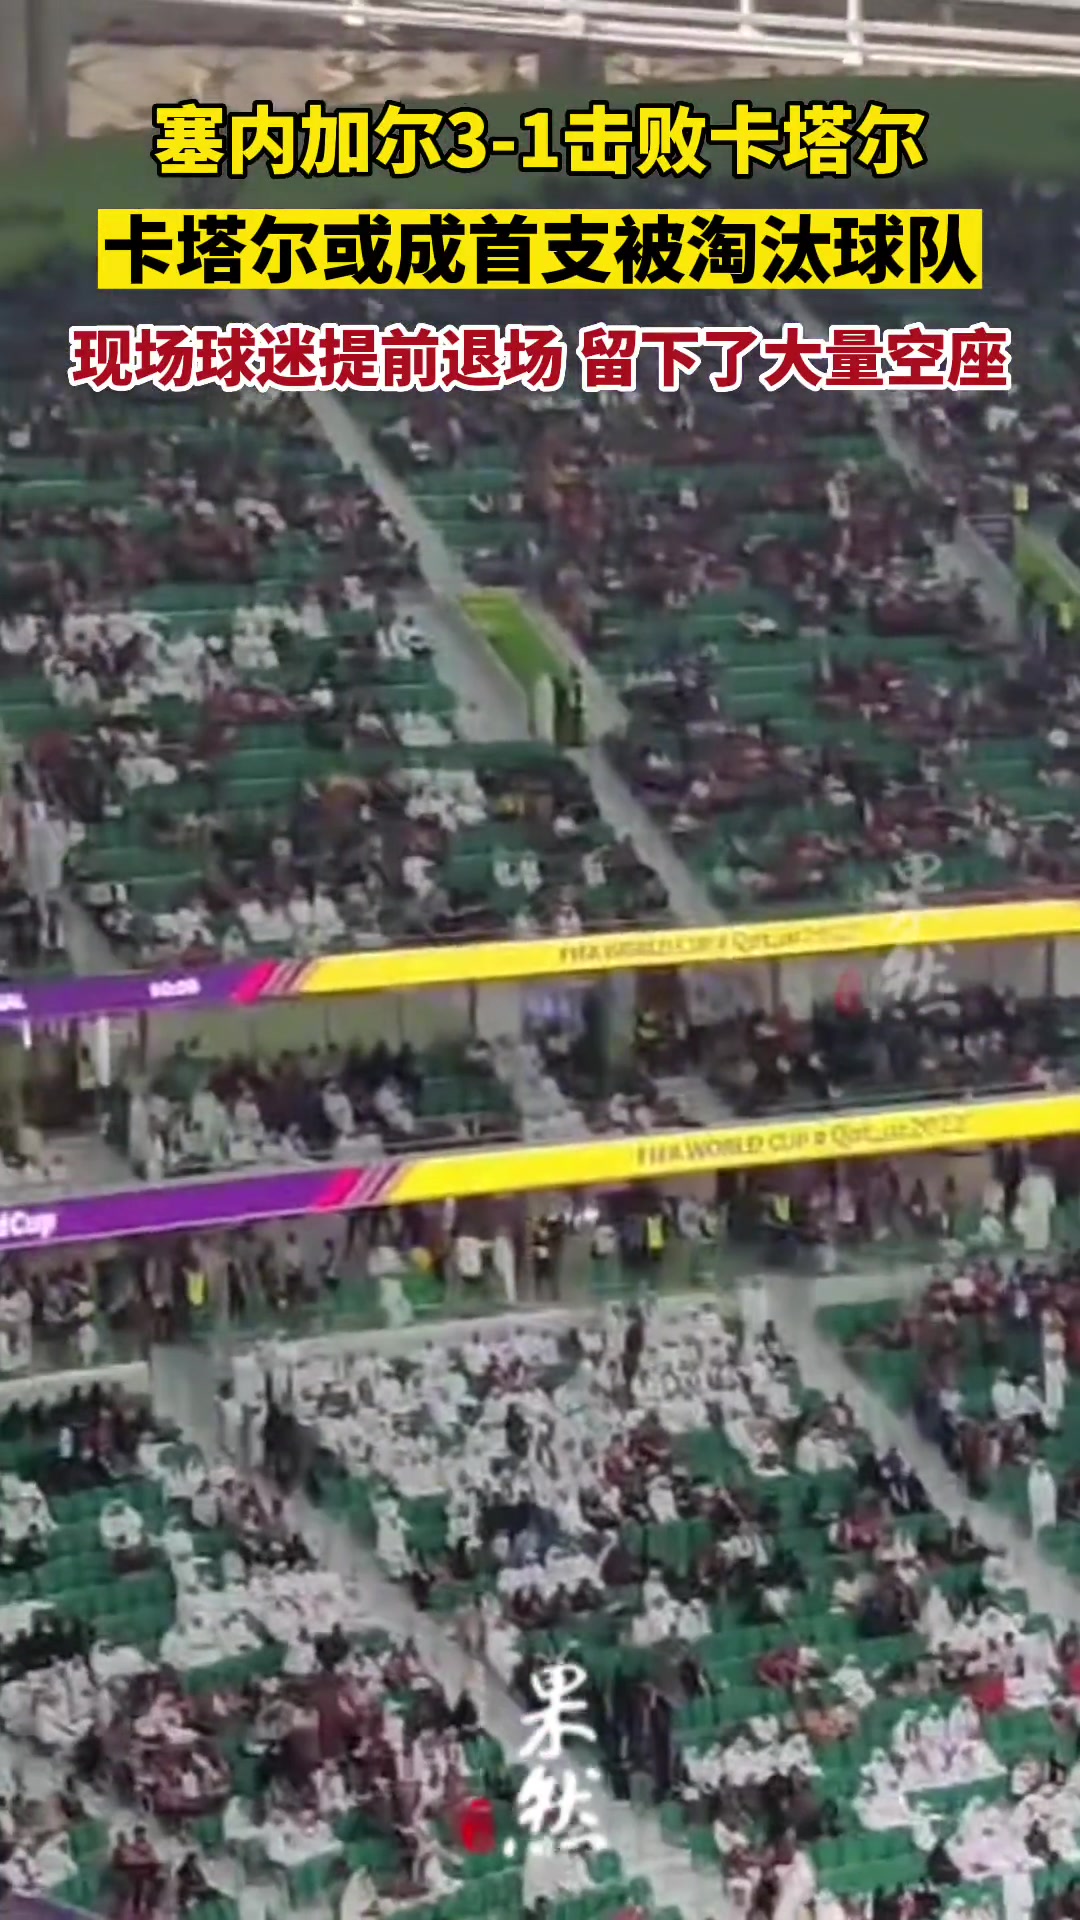 卡塔尔成首支被淘汰球队 现场球迷提前退场 留下了大量空座